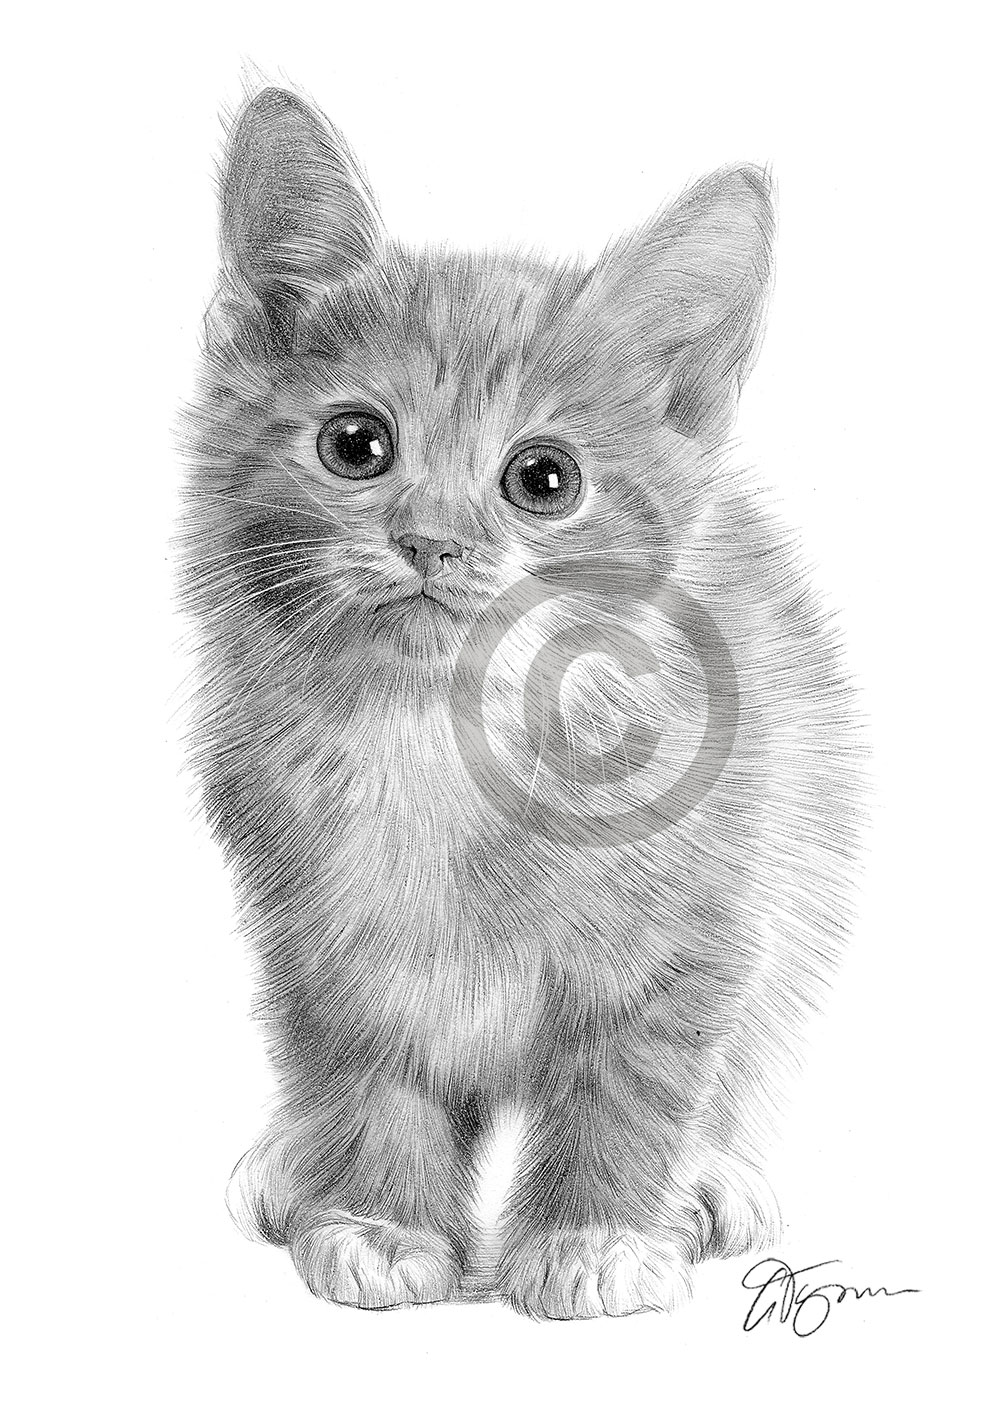 Pencil drawing portrait of a kitten by artist Gary Tymon